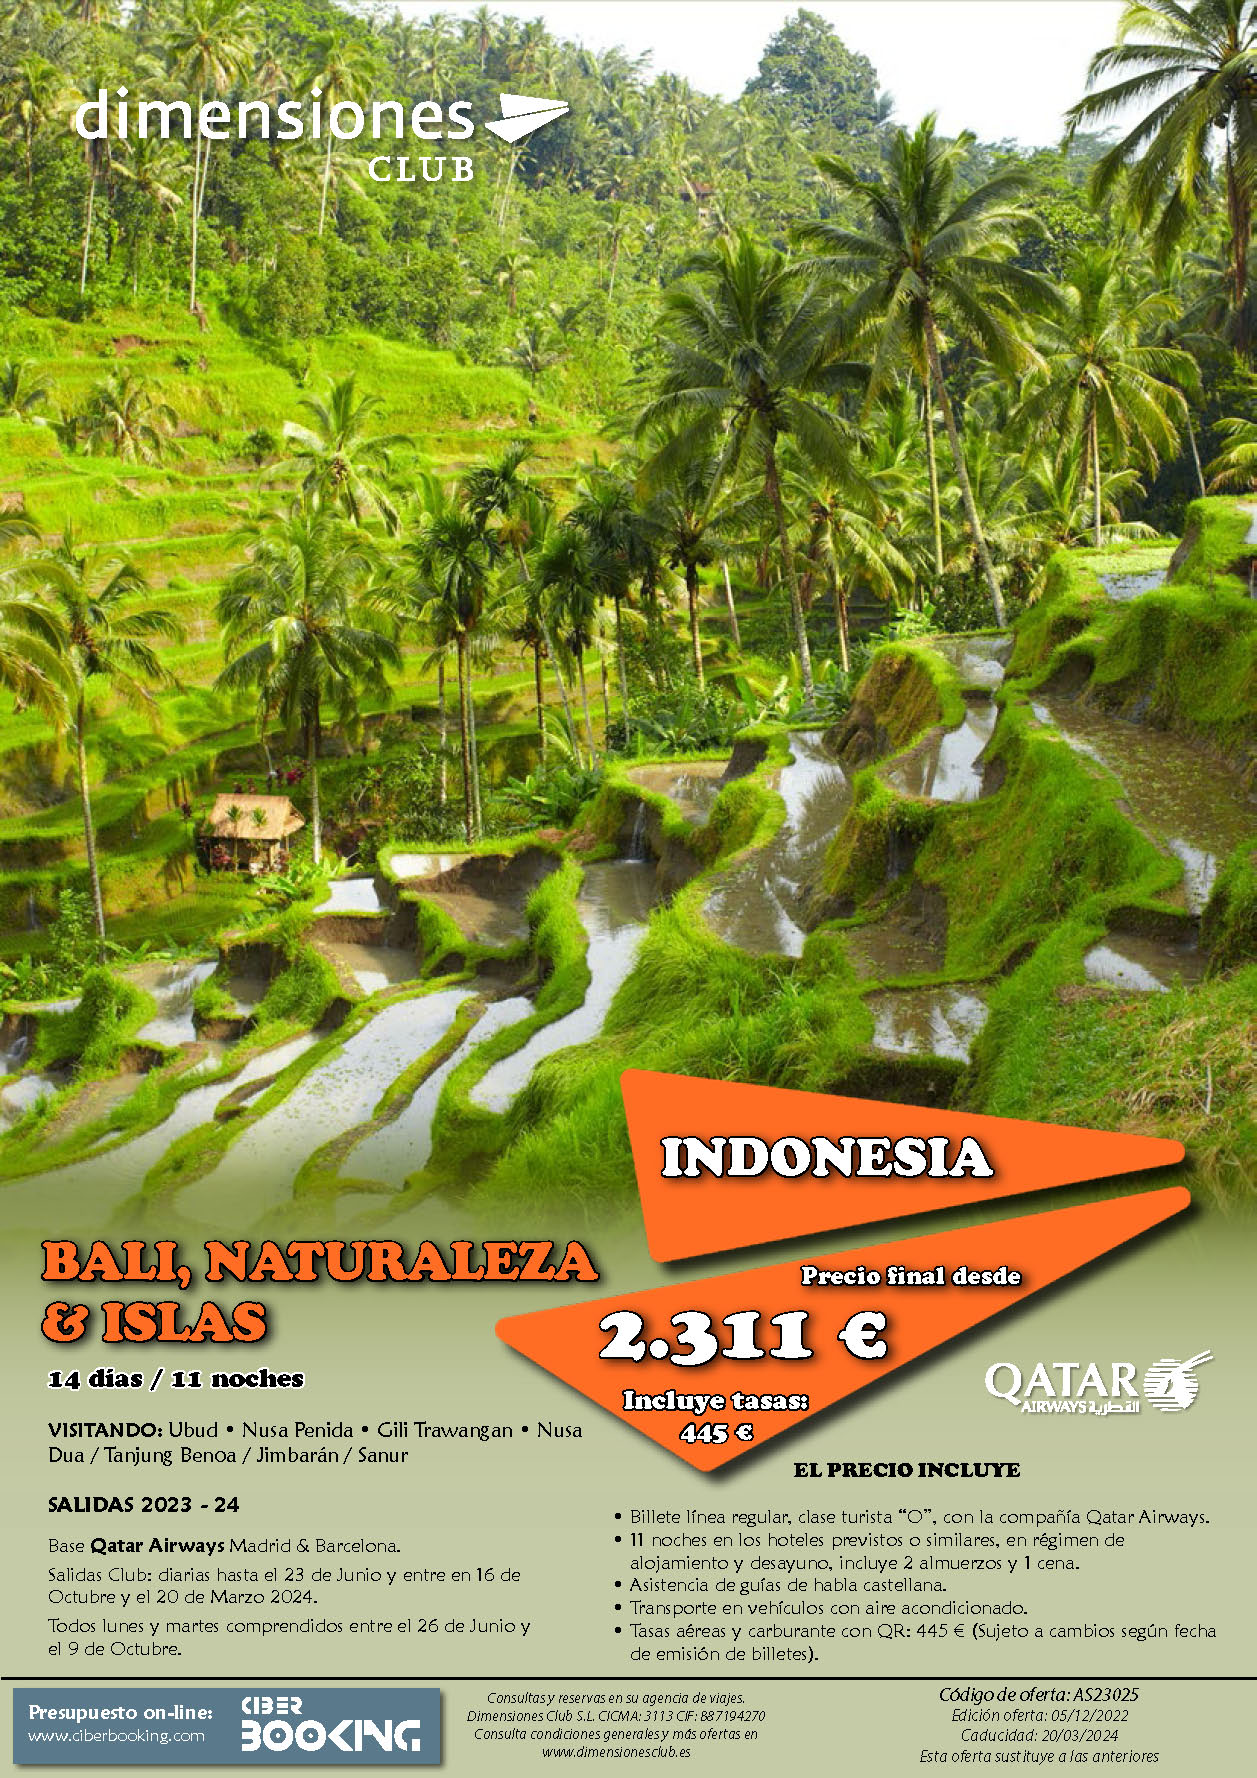 Oferta Dimensiones Club Bali Naturaleza e Islas 2023 14 dias salidas desde Madrid y Barcelona vuelos Qatar Airways